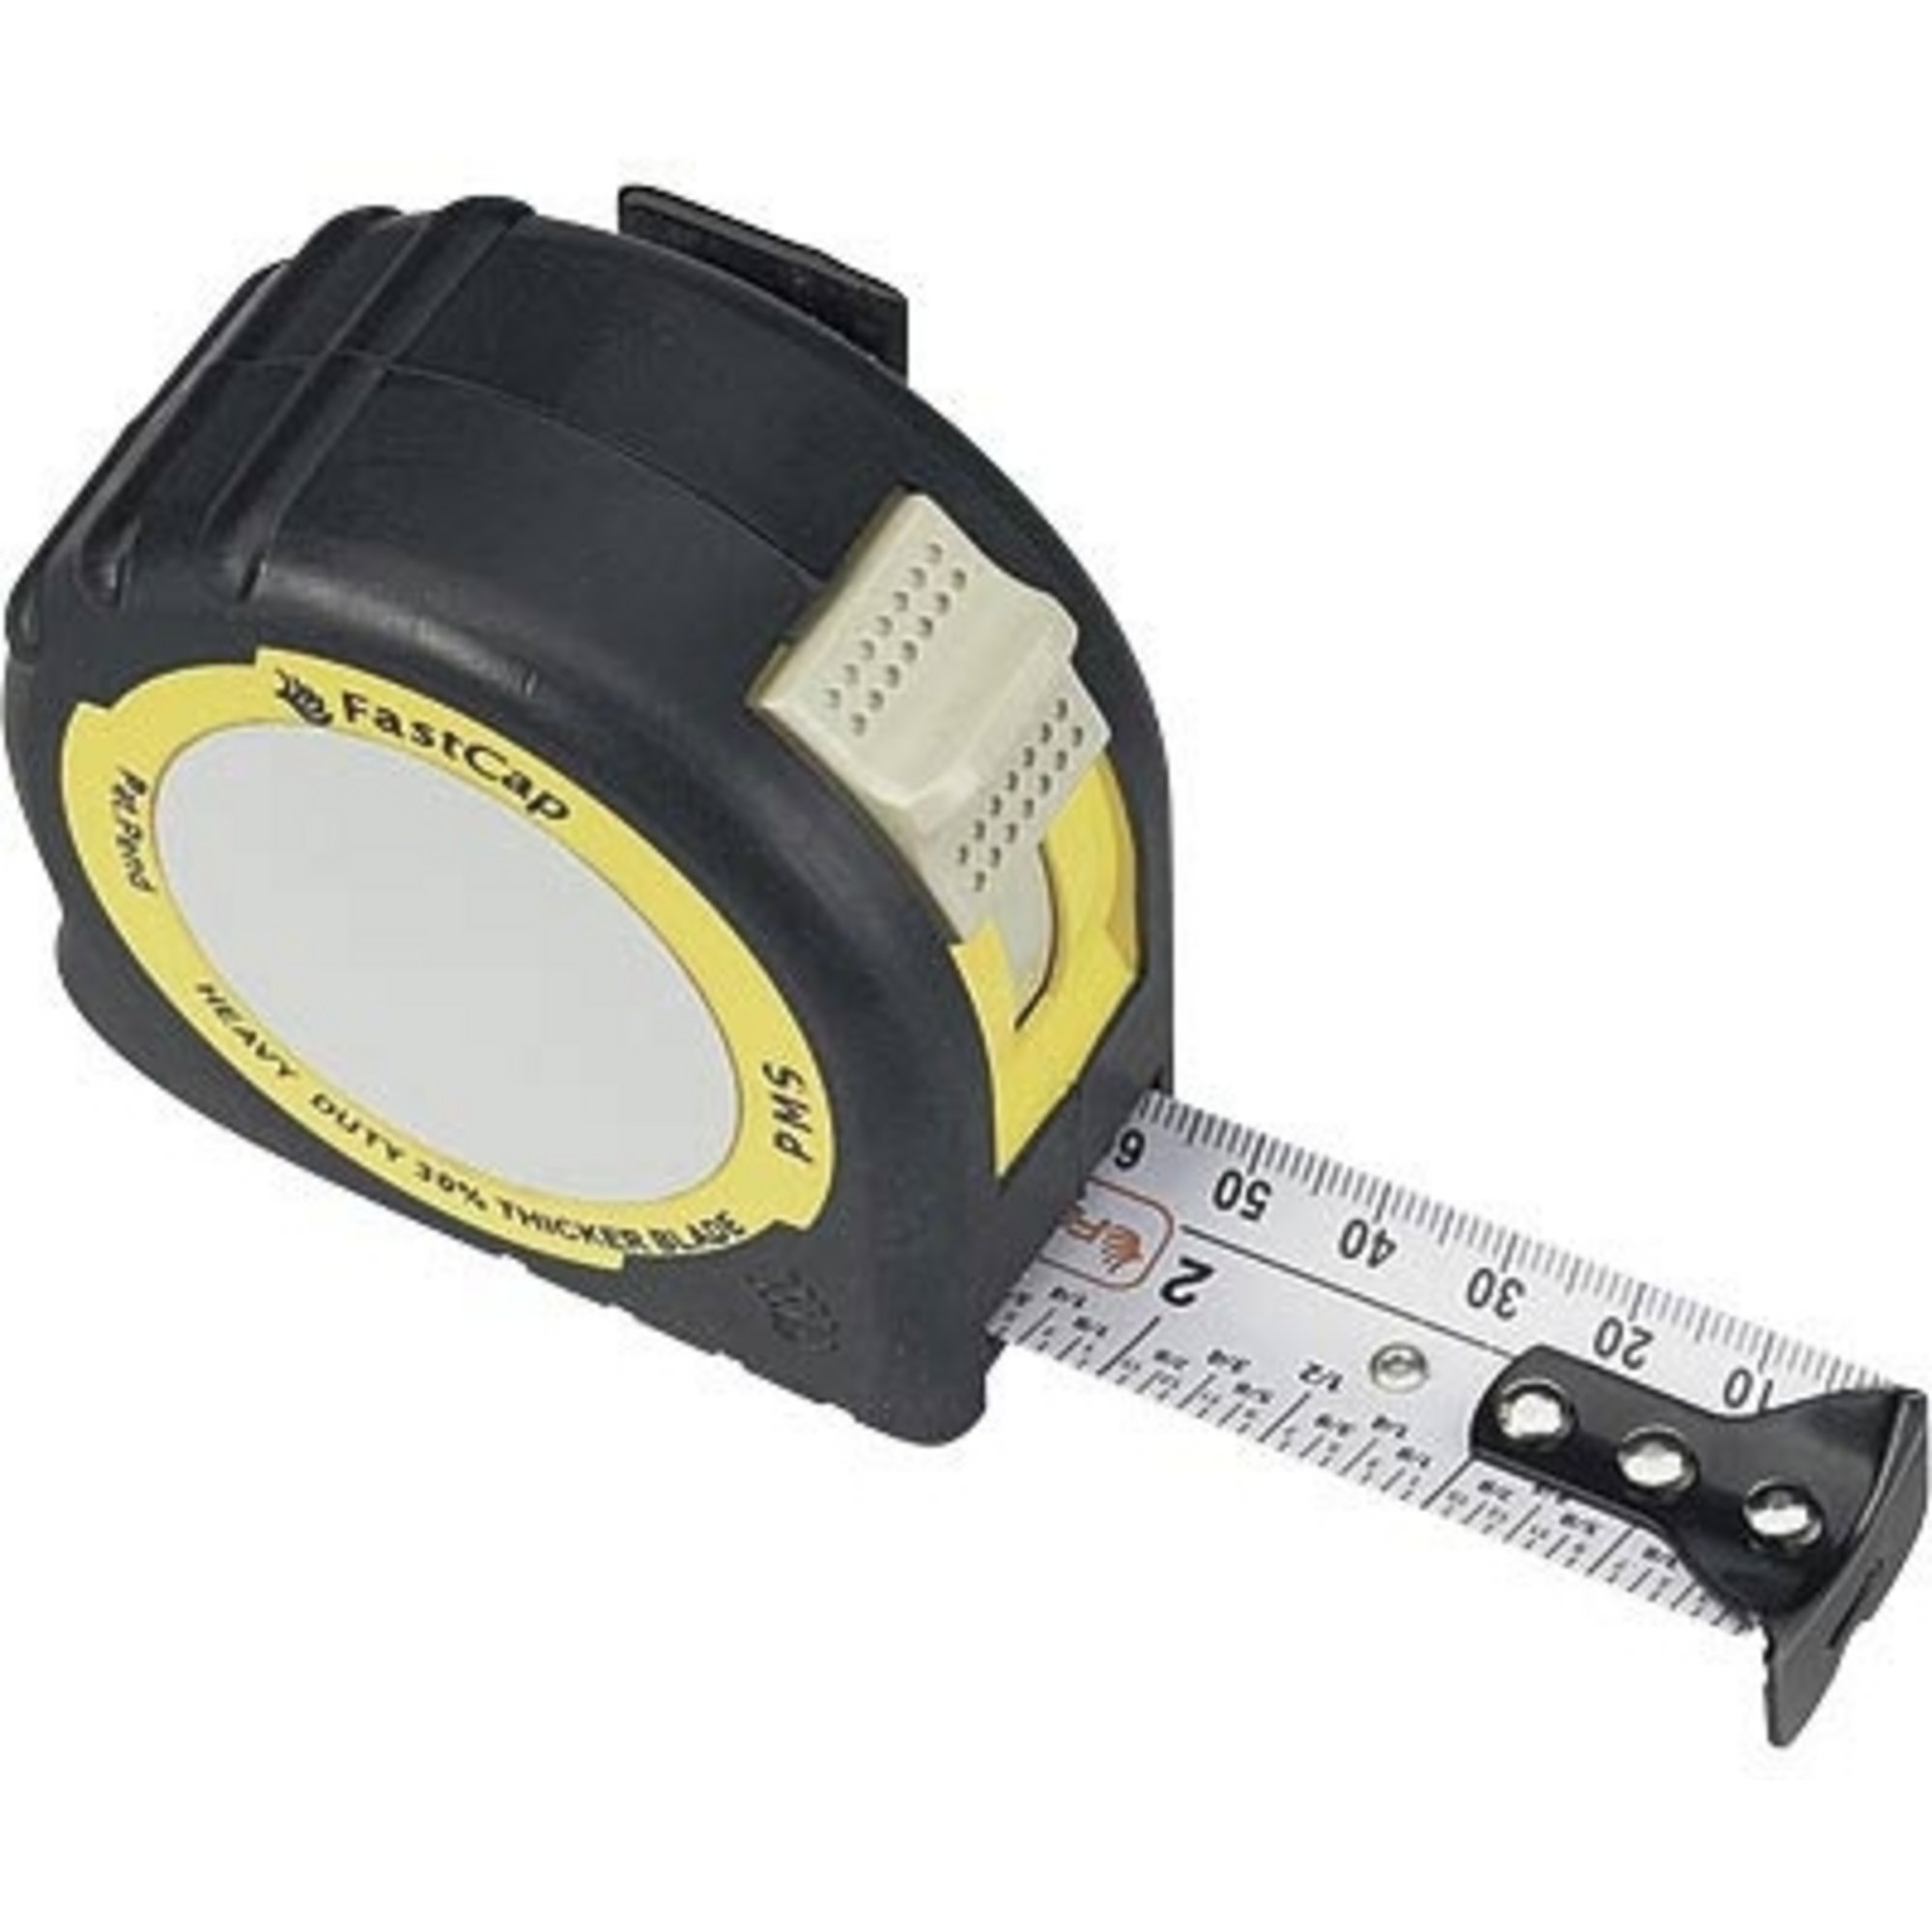 Pad Metric/Standard Tape Measure - 16ft, PMS-16 (Fast Cap)